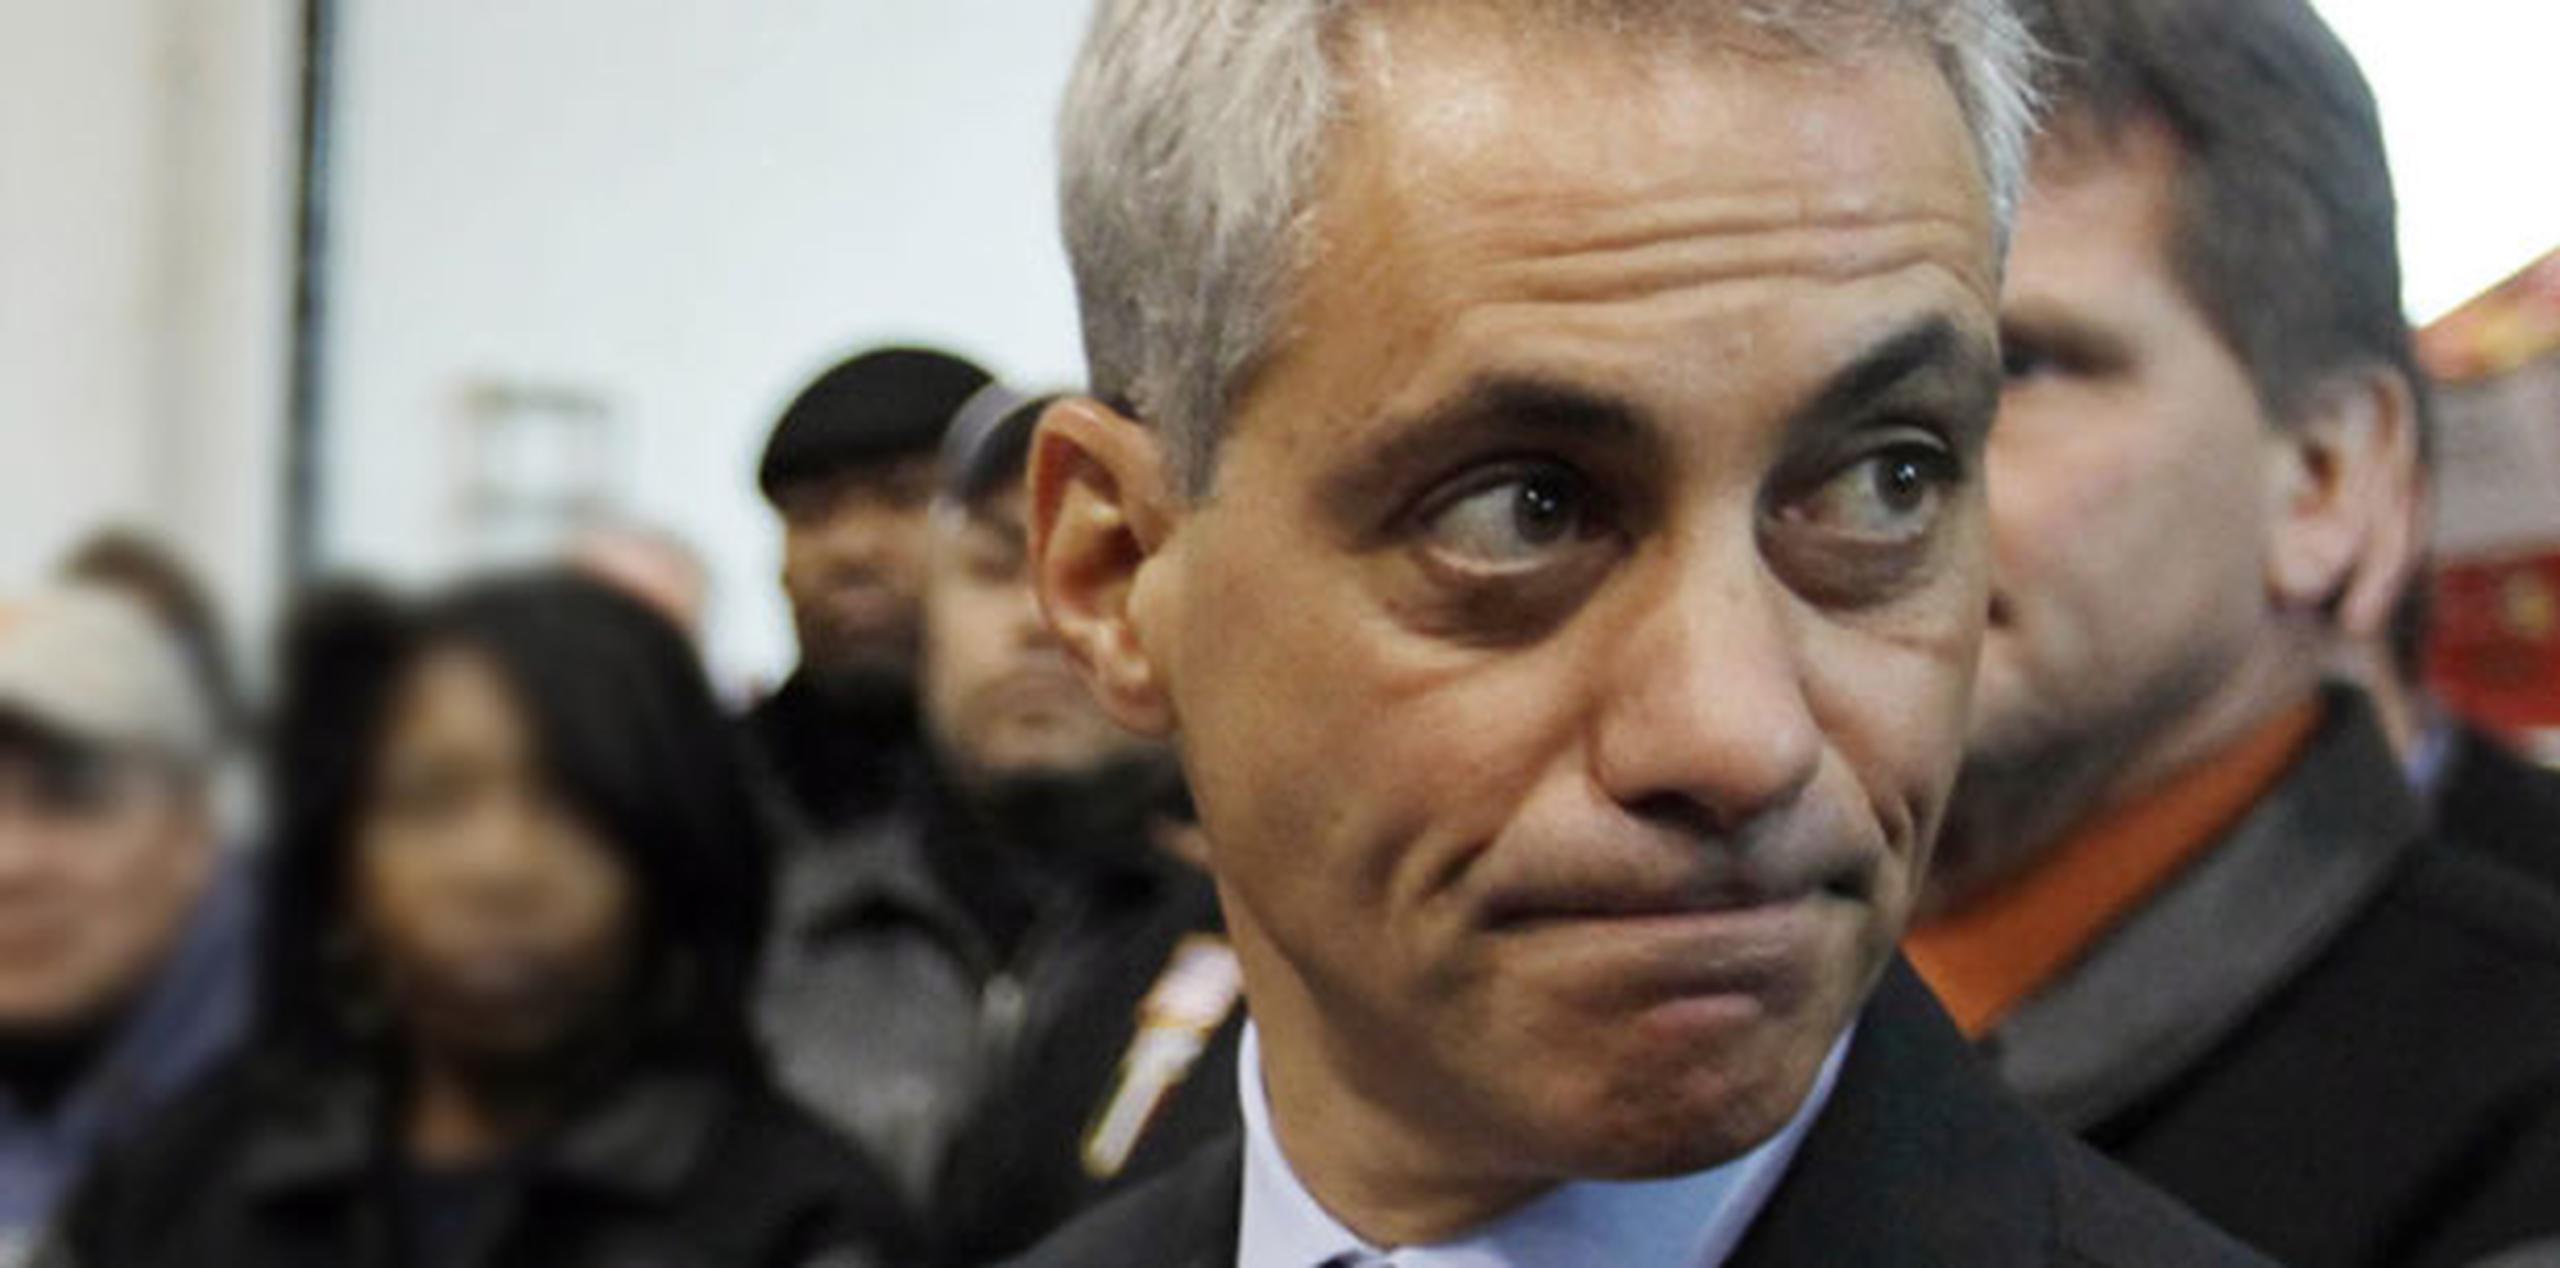 El alcalde de Chicago, Rahm Emanuel, no se ha pronunciado sobre el incidente. (Archivo)